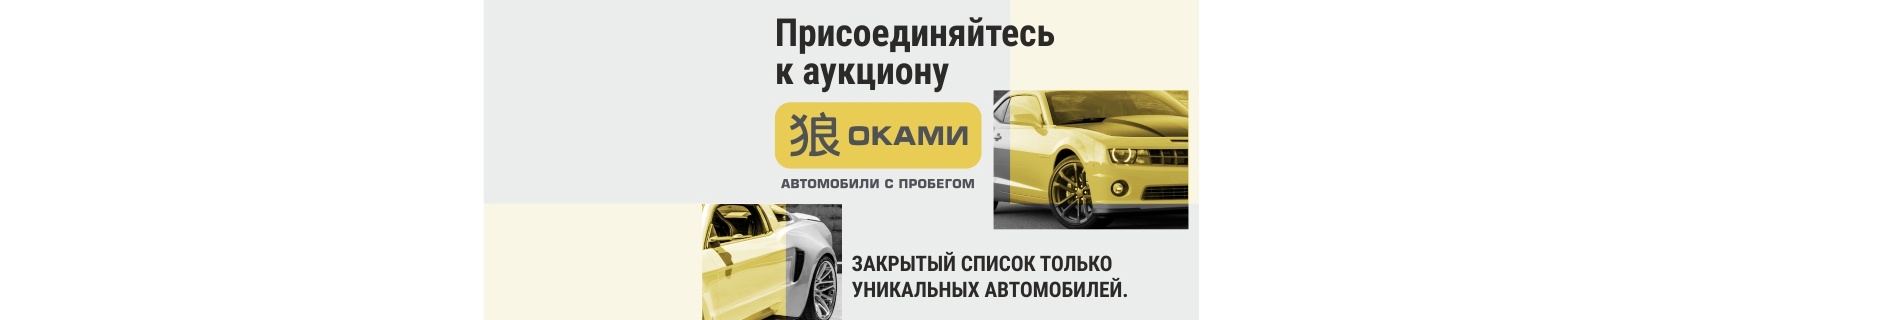 Присоединяйтесь к Автомобильному аукциону Оками. Автомобили с пробегом